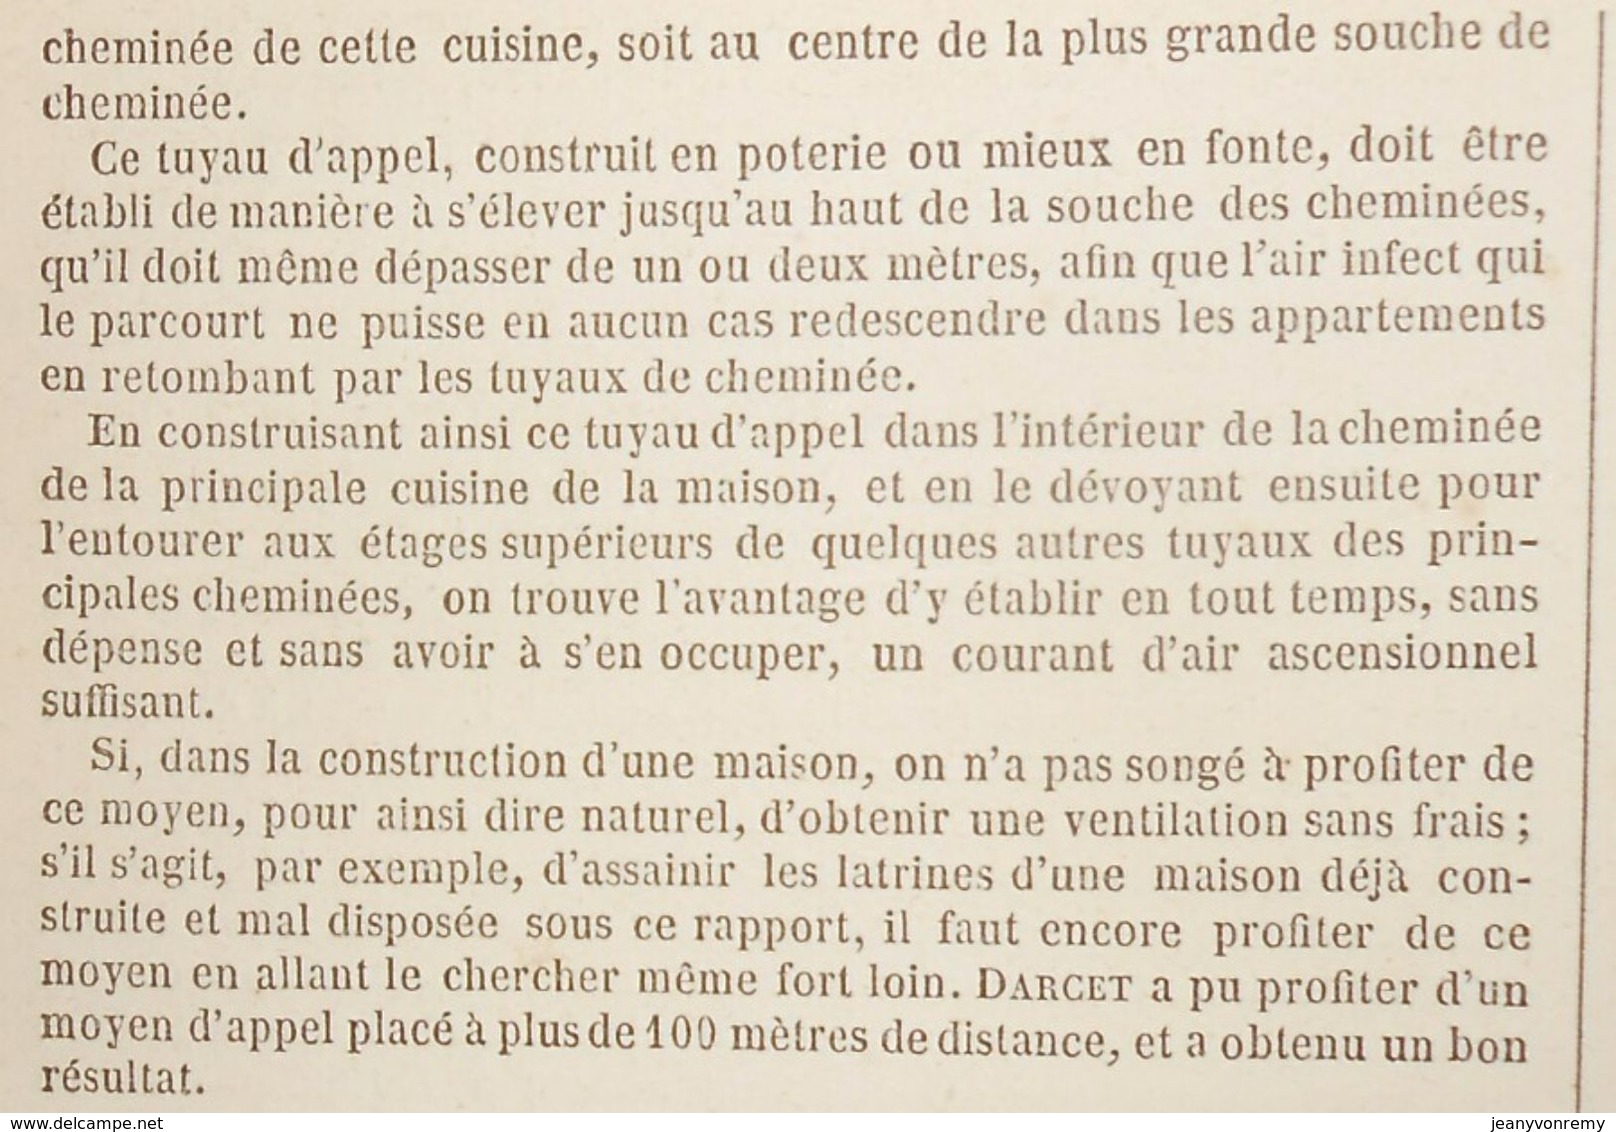 Plan de l'assainissement des latrines et lieux d'aisances. 1859